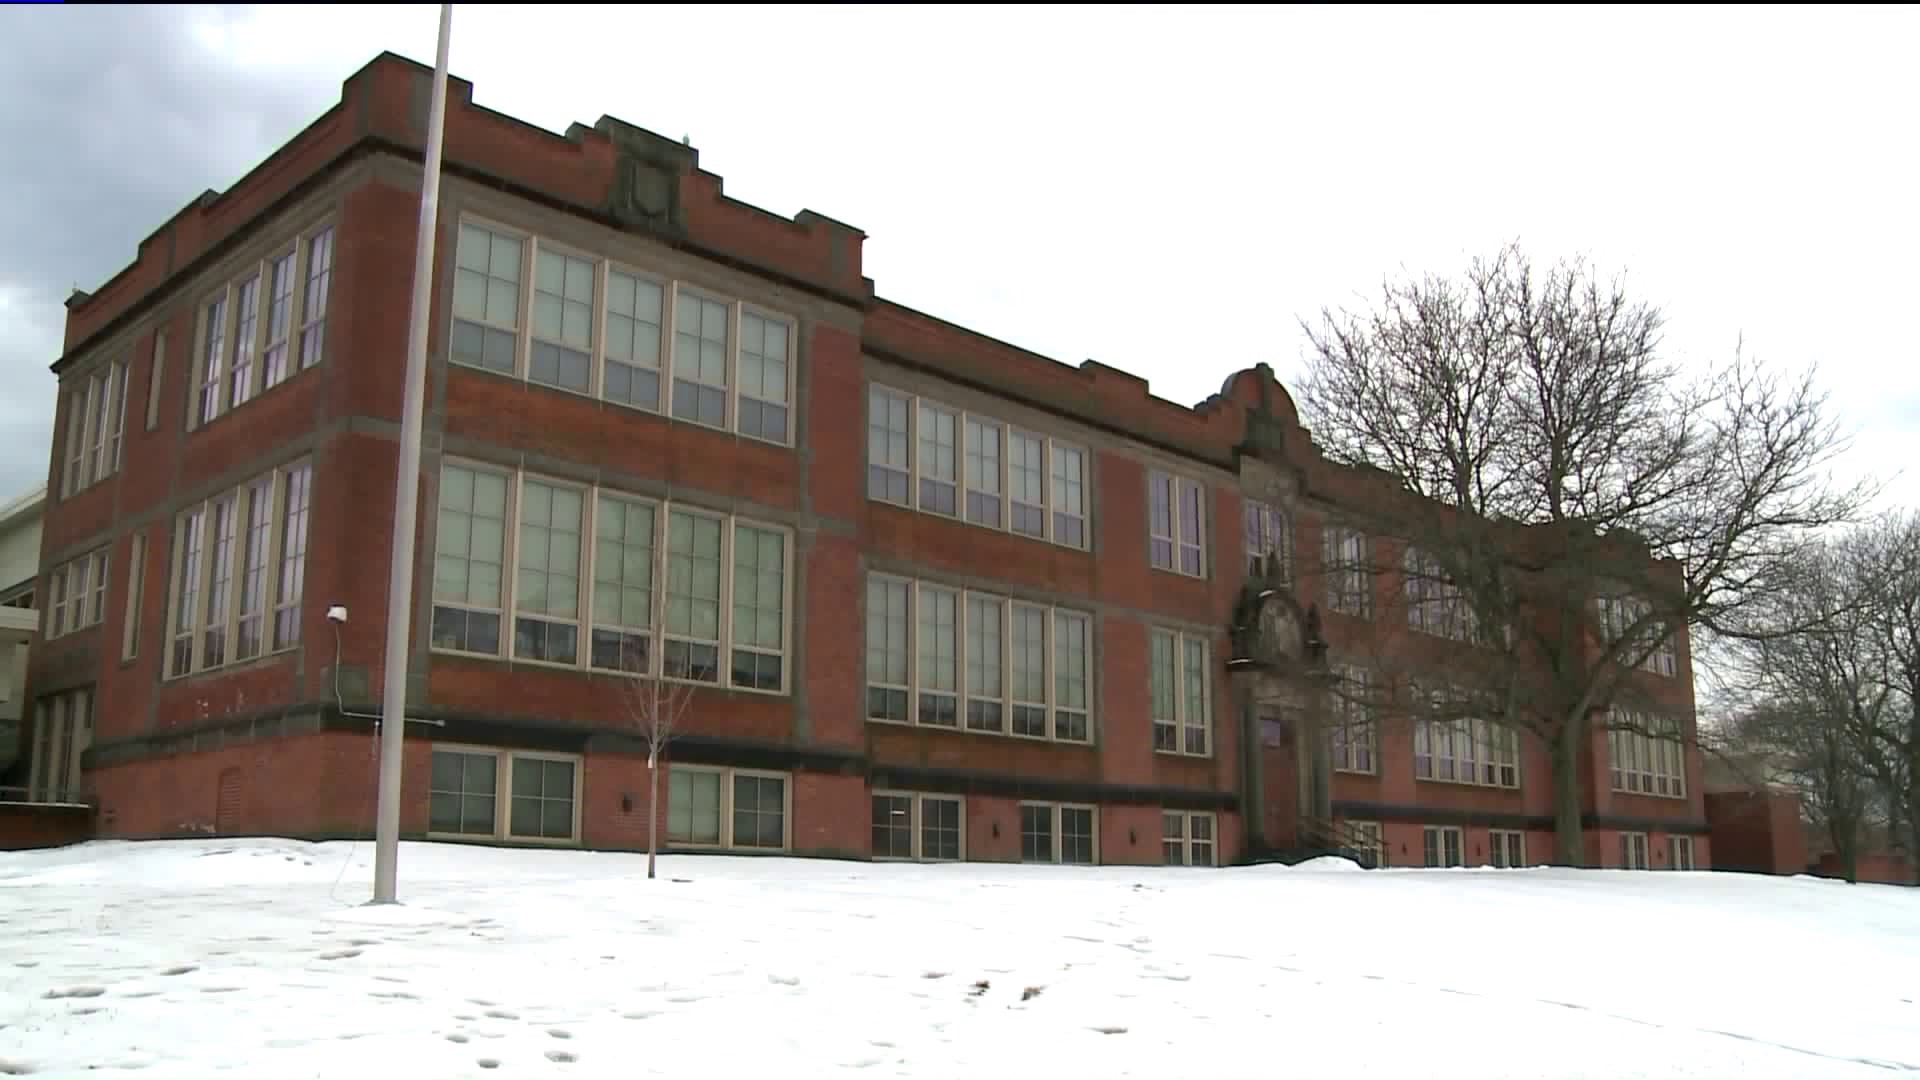 Barnard School investigation